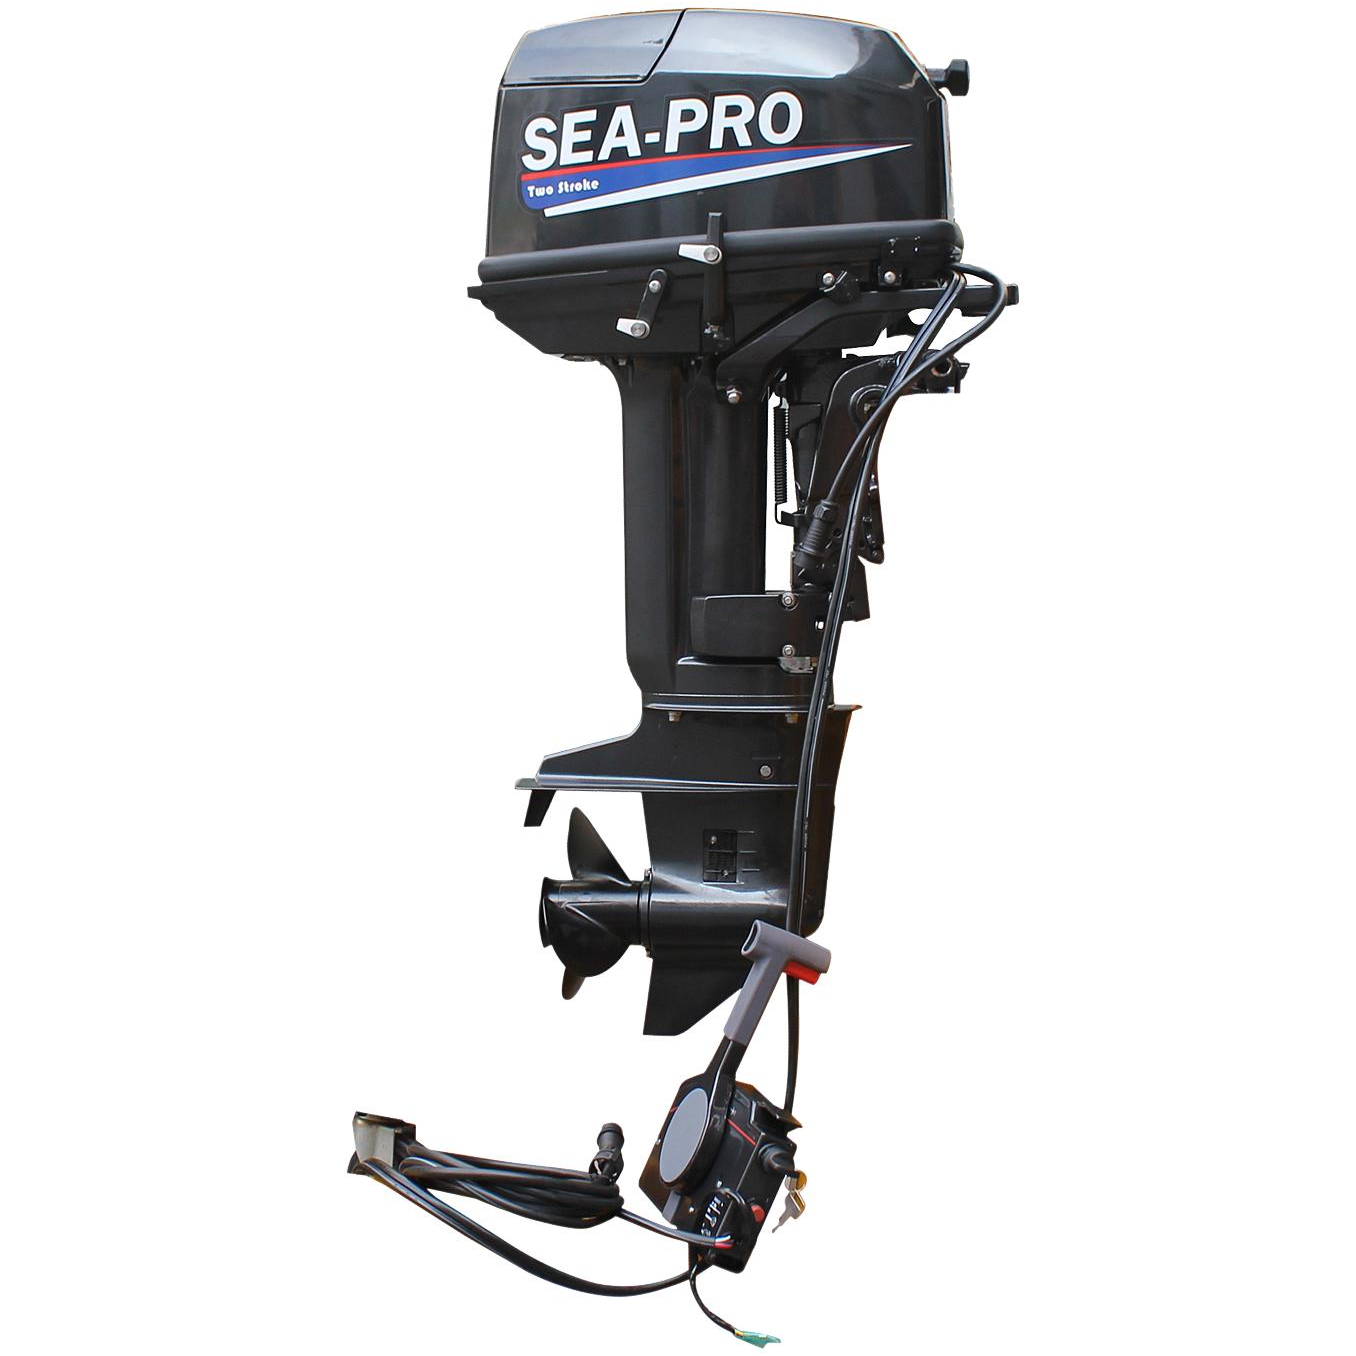 Купить лодочный мотор т. Лодочный мотор Sea-Pro t 30 s. Лодочный мотор Sea-Pro t 30se. Sea-Pro t 30s&e. Мотор Sea Pro 30 s&e.